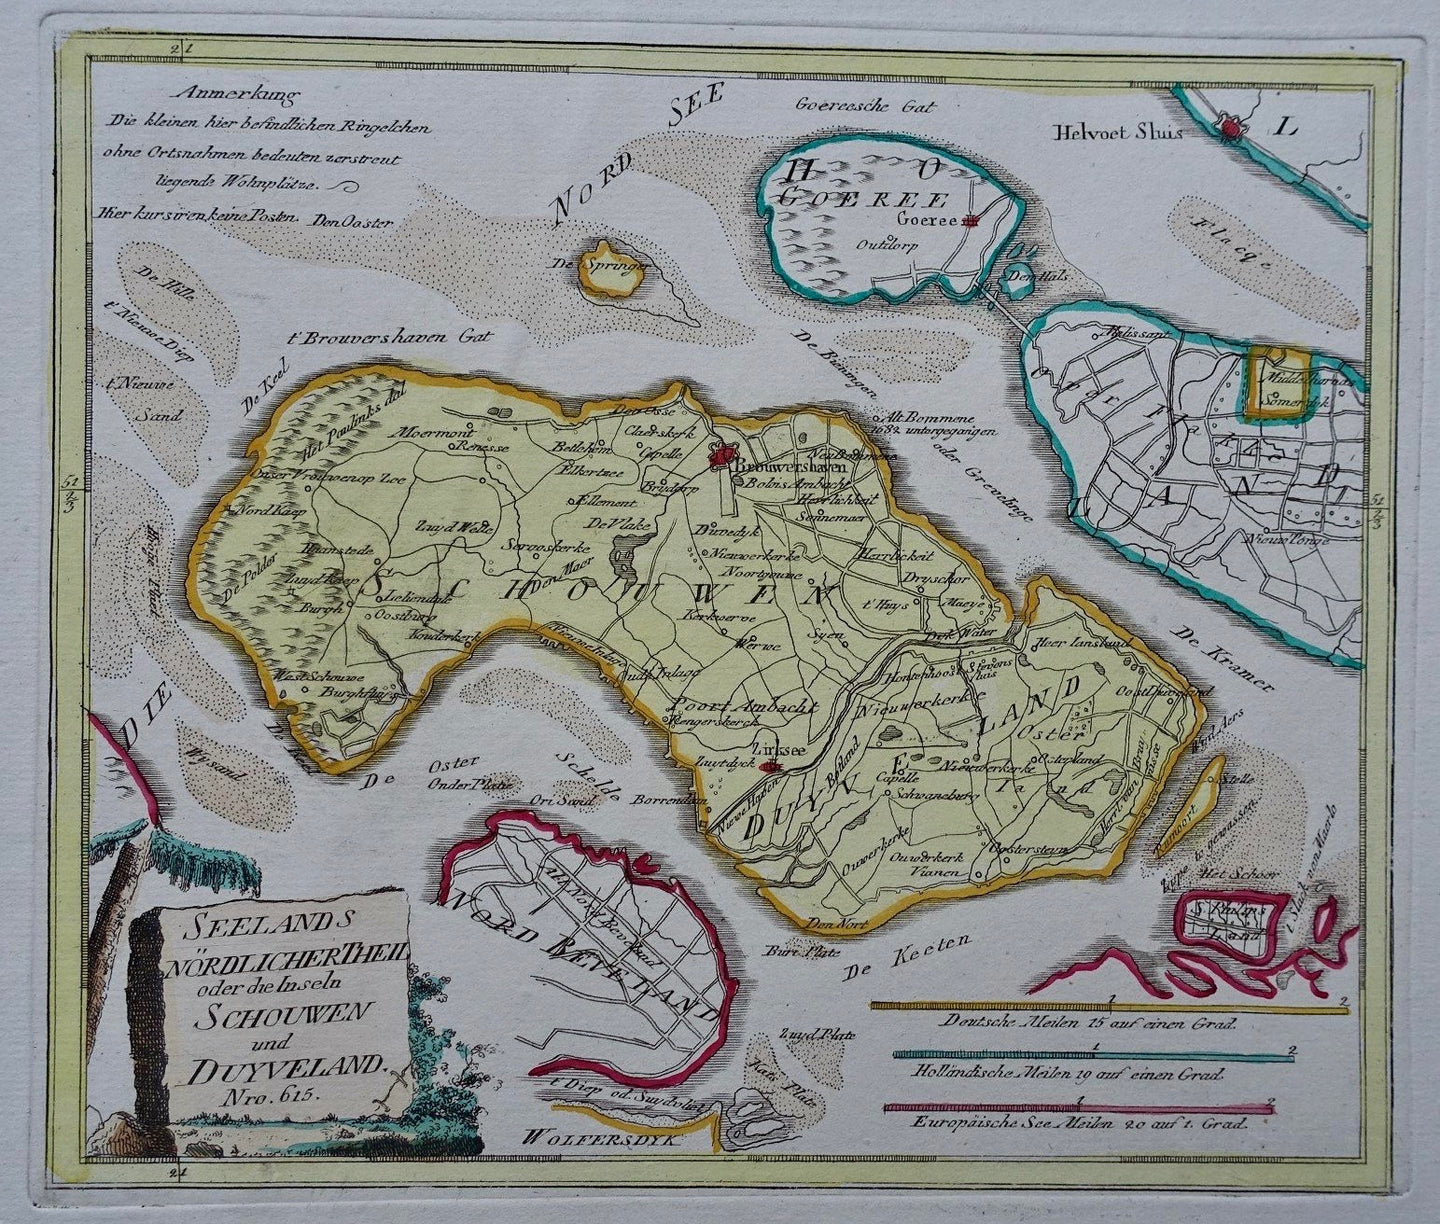 Schouwen-Duiveland - FJJ von Reilly - 1790